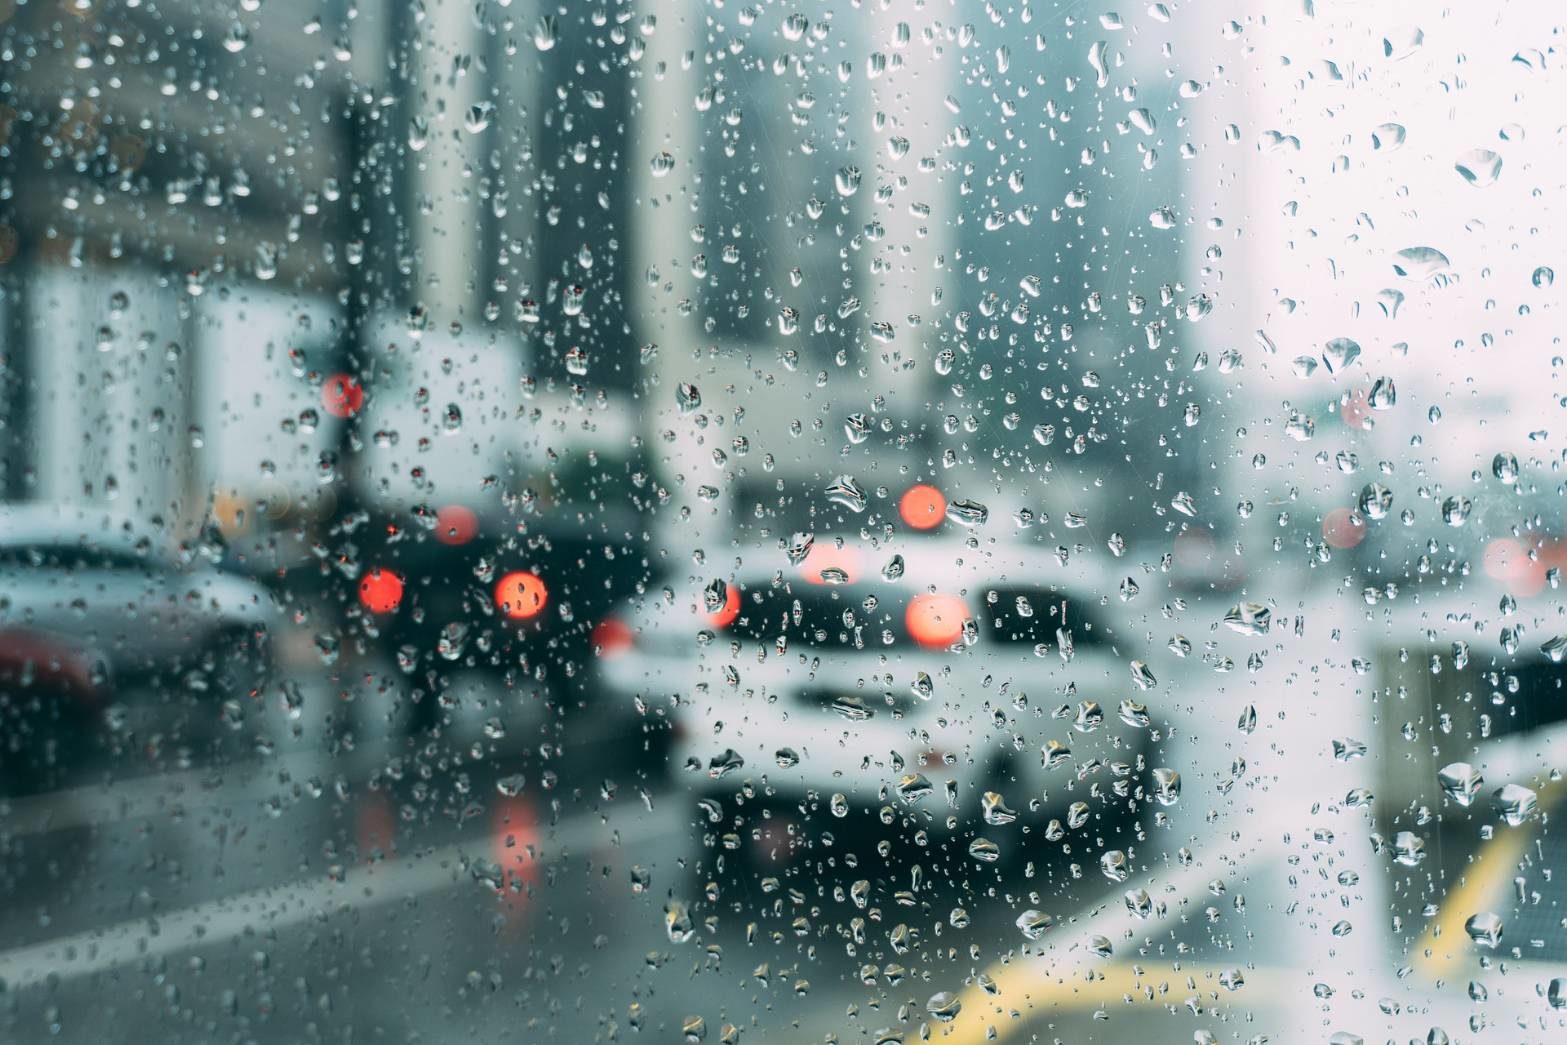 อุตุฯ เตือน 48 จังหวัด รับมือฝนตกหนัก 'ภาคใต้' อ่วมเสี่ยงเจอฝน 70%